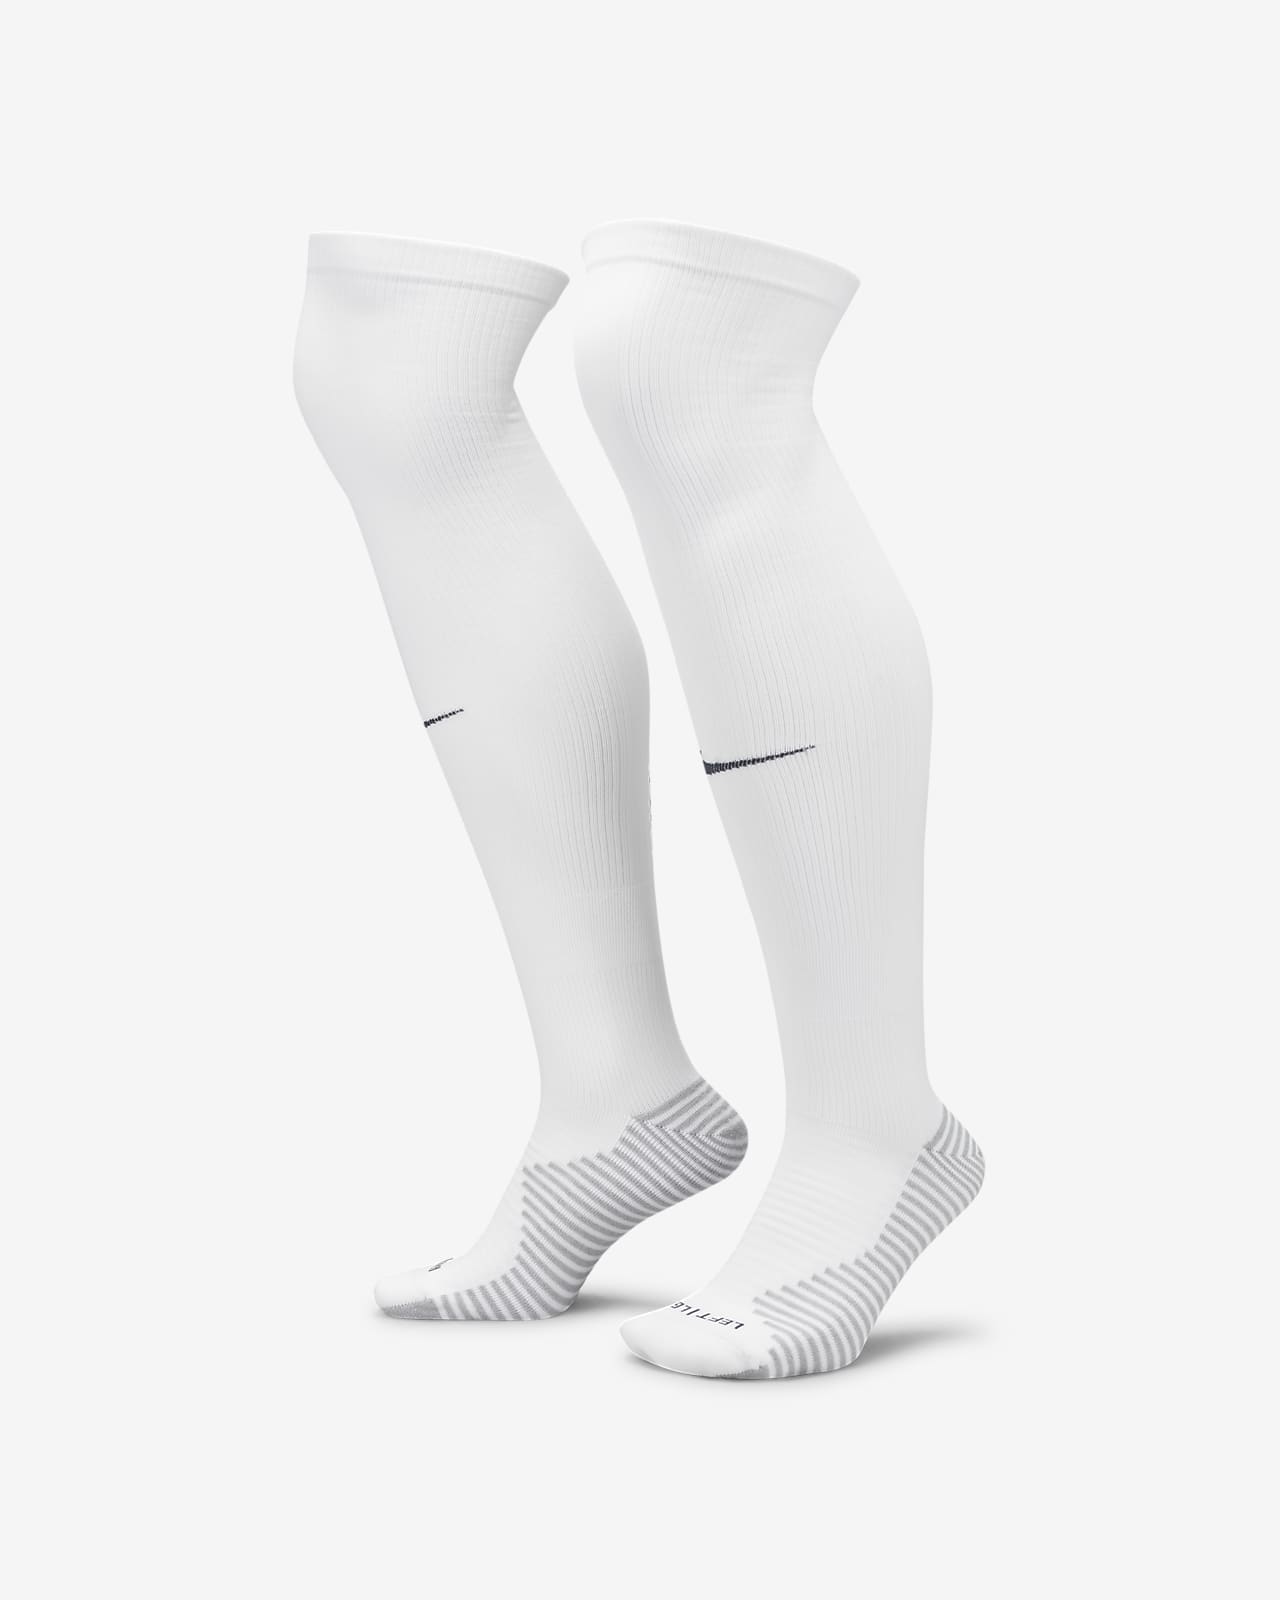 Ποδοσφαιρικές κάλτσες μέχρι το γόνατο εντός/εκτός έδρας/τερματοφύλακα Παρί Σεν Ζερμέν Strike